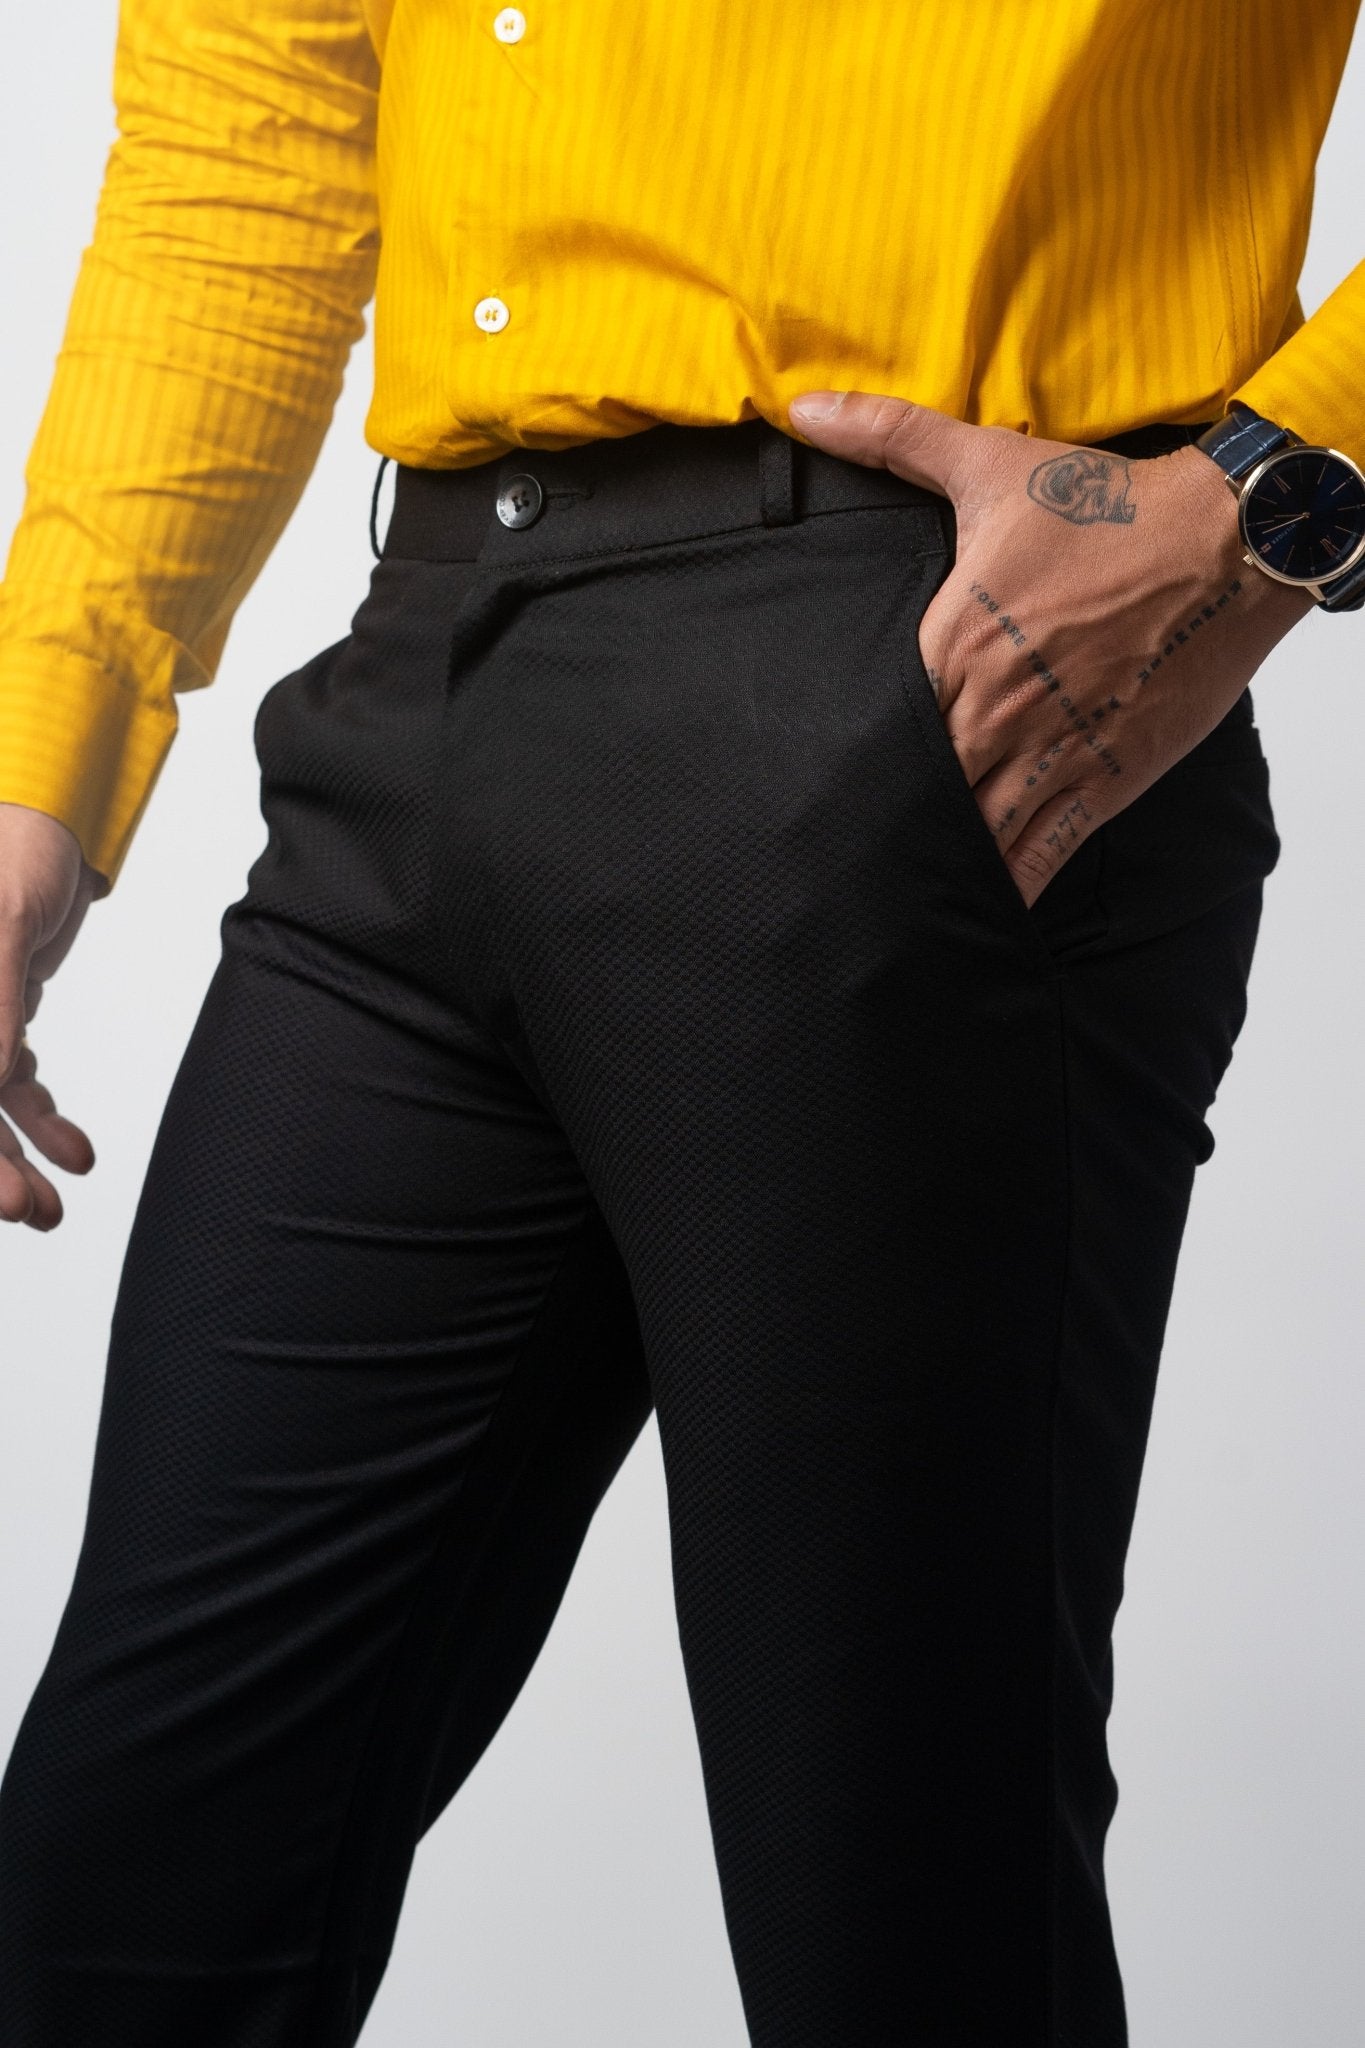 Black Color Formal Cotton Pant for Men - Punekar Cotton